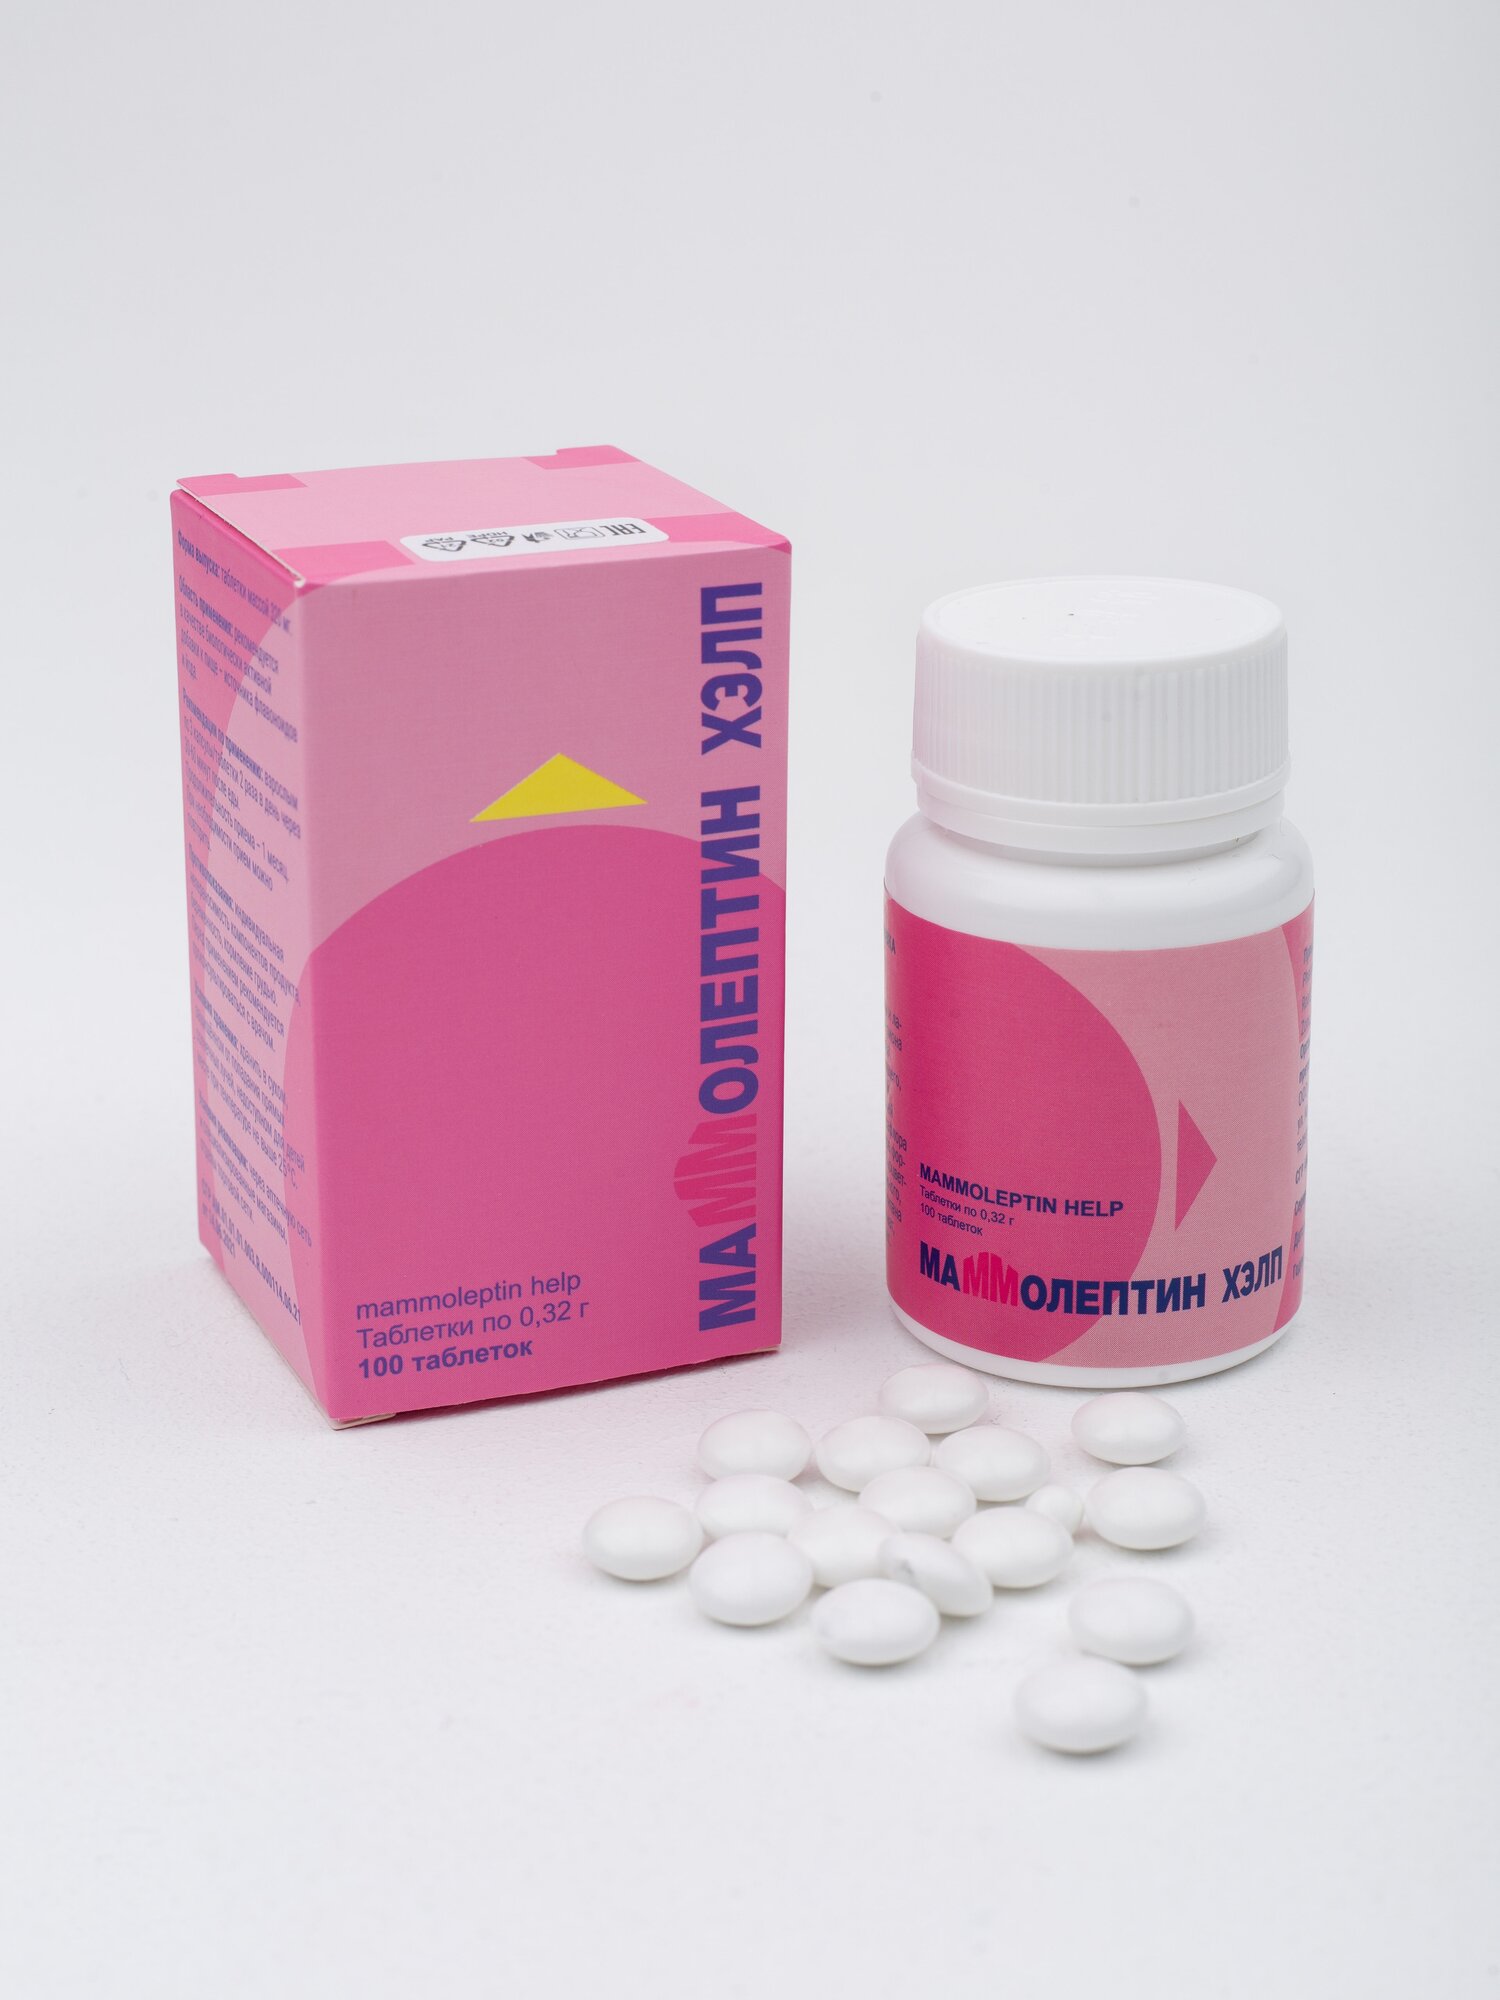 Маммолептин хэлп БАД 100 таблеток Комплекс для поддержания и улучшения женского здоровья Источник антиоксидантов и фитоэстрогенов